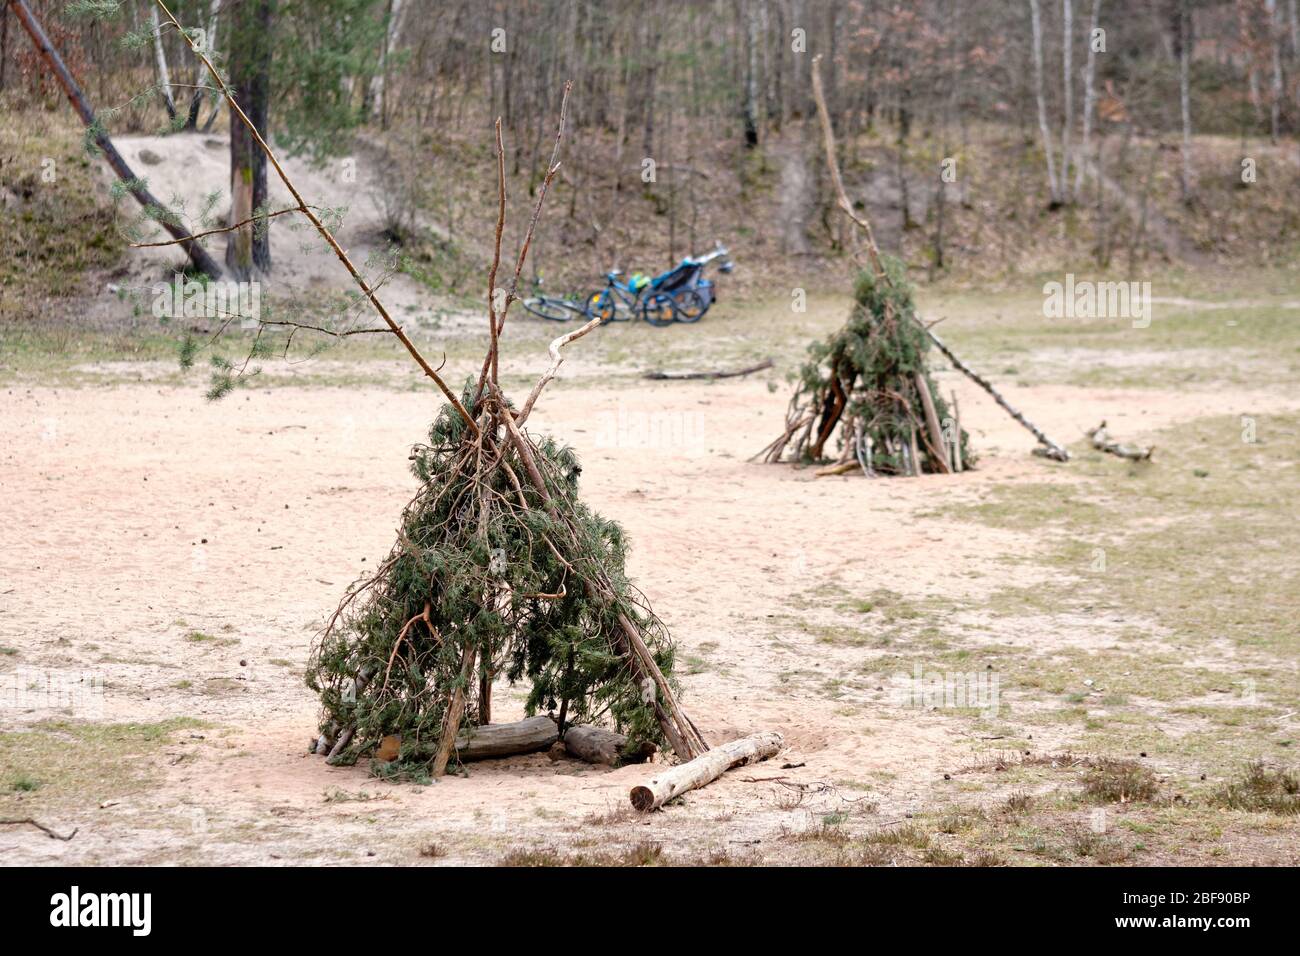 Zwei Teepis mit Zweigen und Zweigen von Nadelbäumen, die auf sandigen Grund im Wald stehen, mit Bycles im Hintergrund, die man in Deutschland im April gesehen hat. Stockfoto